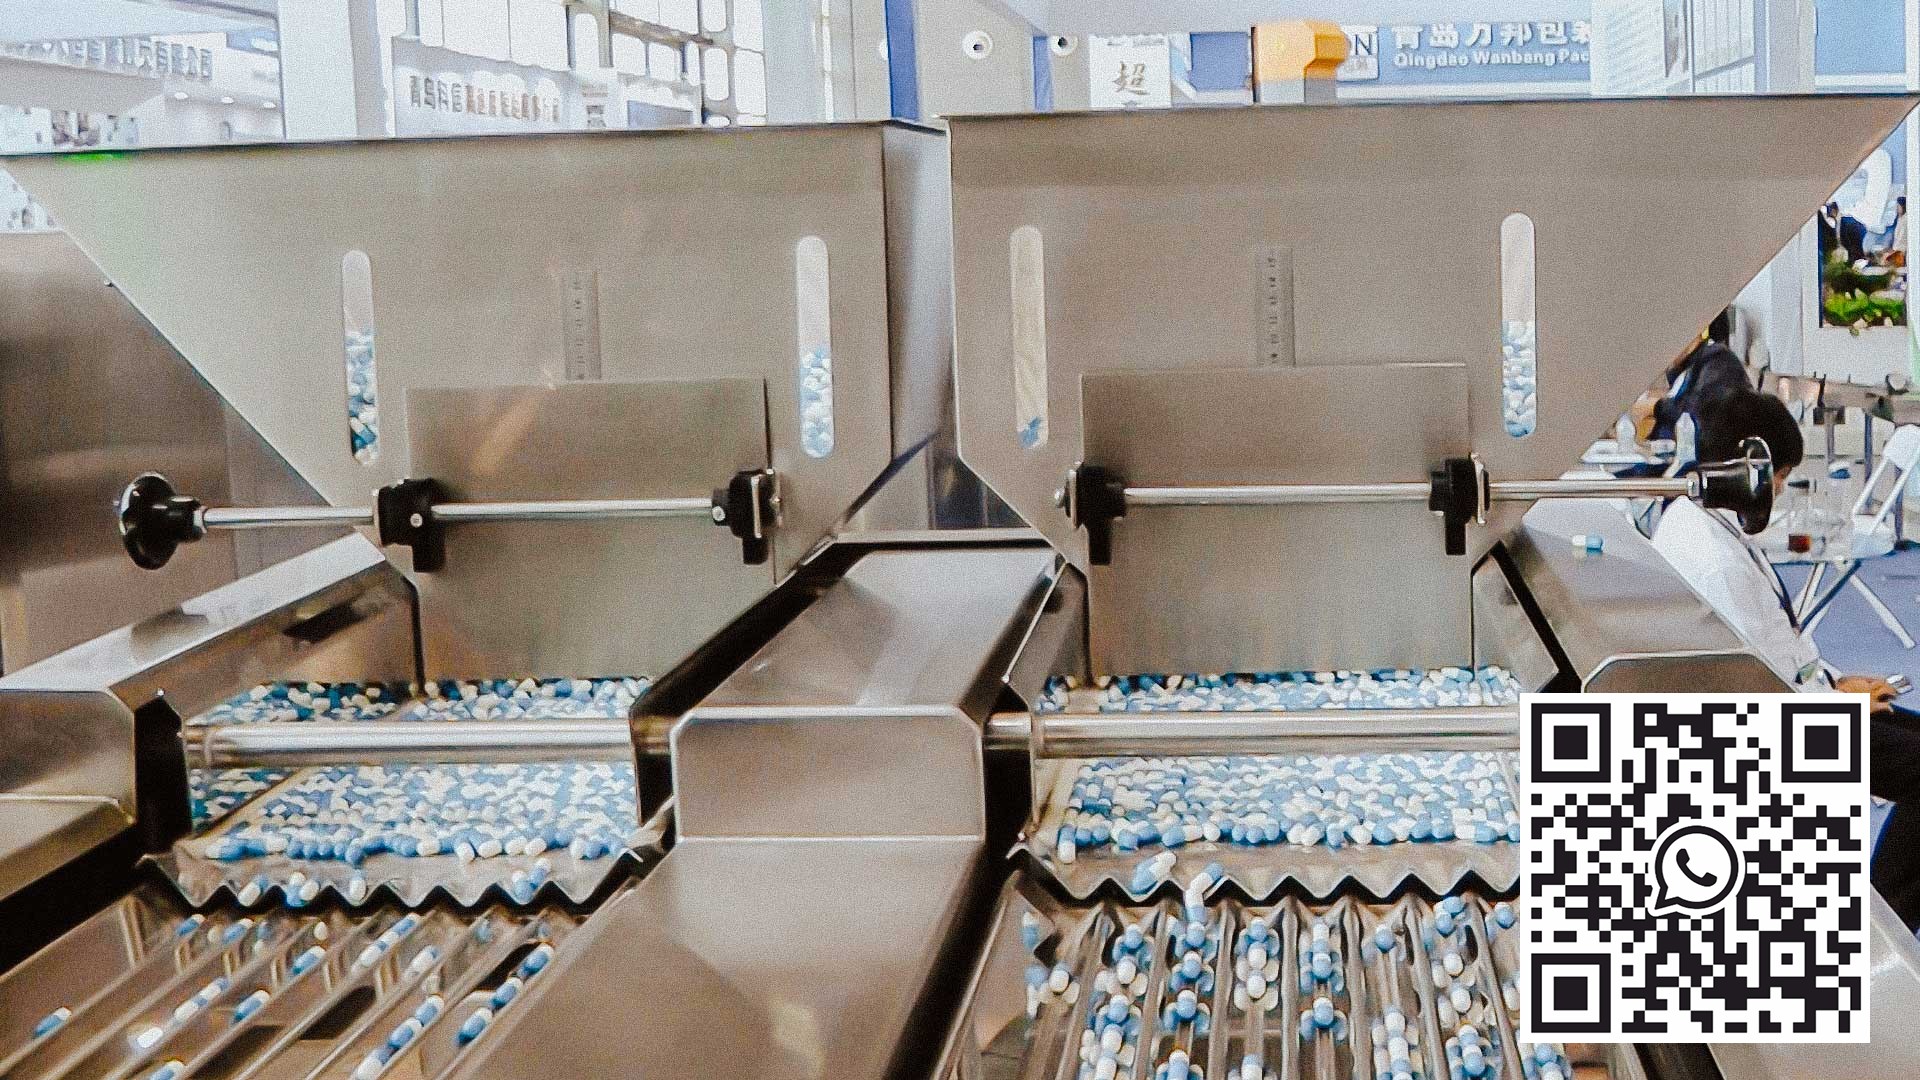 Jalur pembungkusan automatik berkelajuan tinggi untuk memasukkan kapsul gelatin ke dalam botol plastik